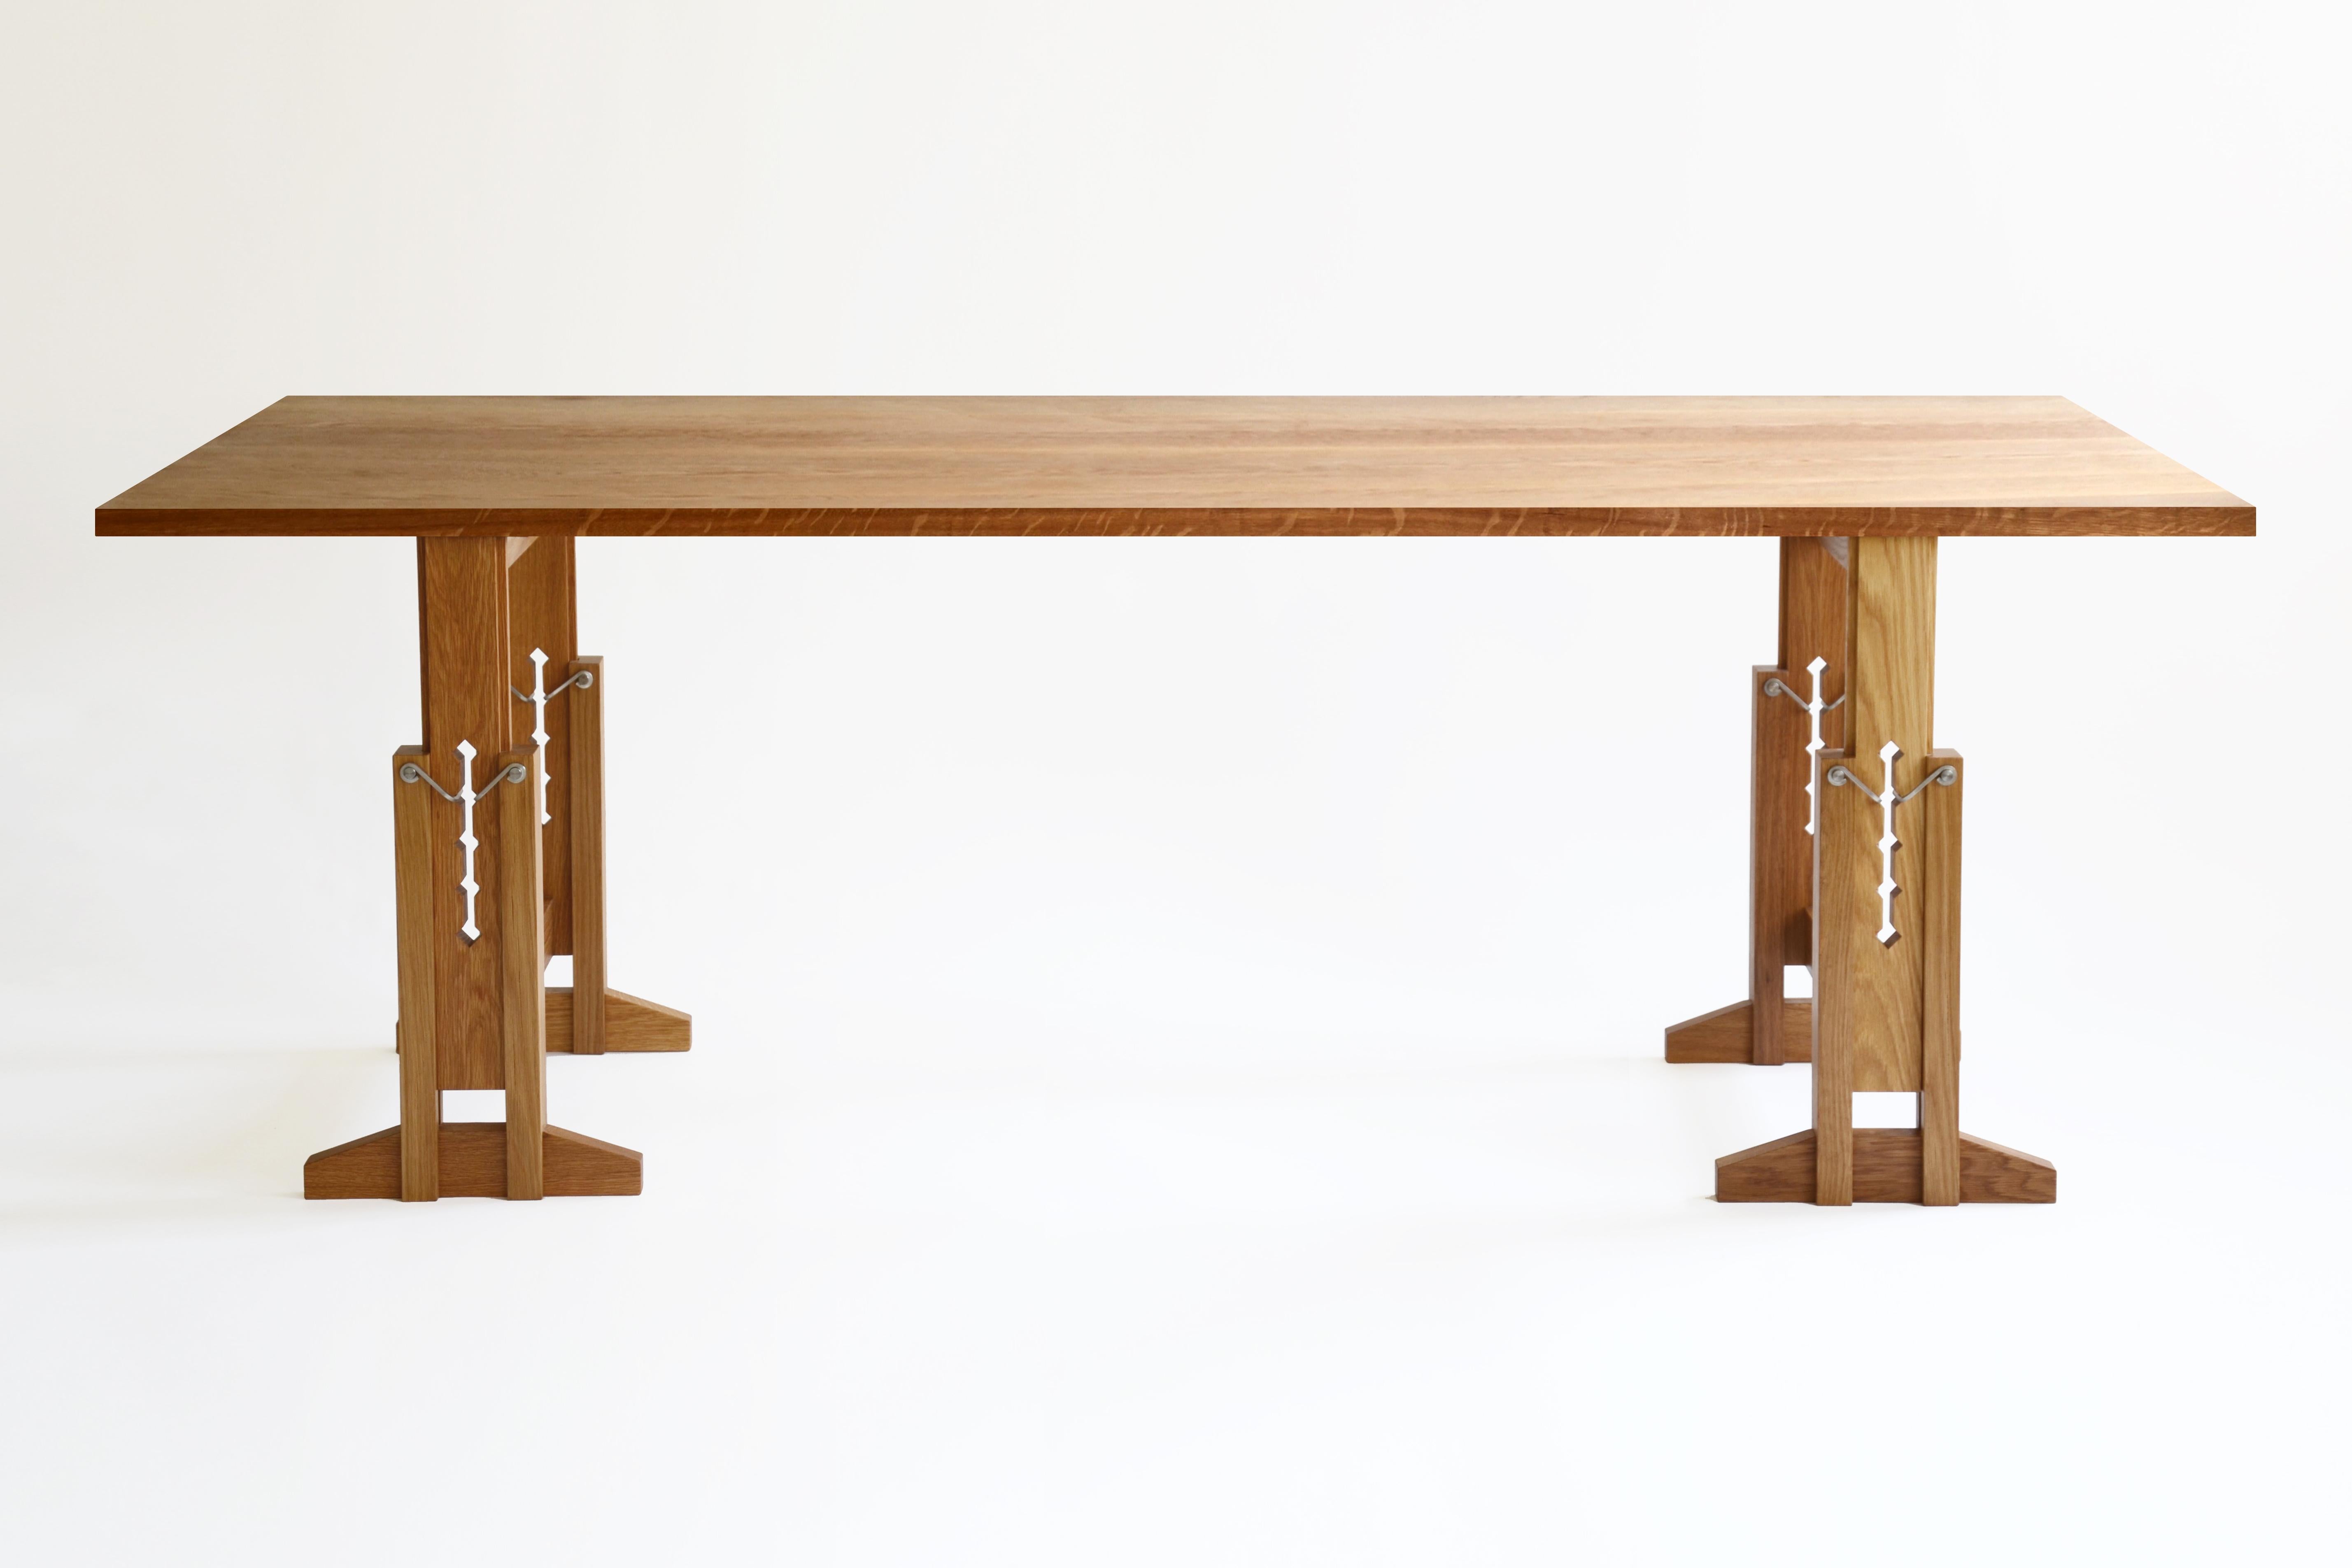 Der 2016 eingeführte WORK-Tisch ist eine zeitgenössische Variante der traditionellen Arbeitstische, die von Künstlern und Designern seit Jahrhunderten verwendet werden. 
Der Tisch hat höhenverstellbare Sockel aus massiver Eiche und eine Platte aus